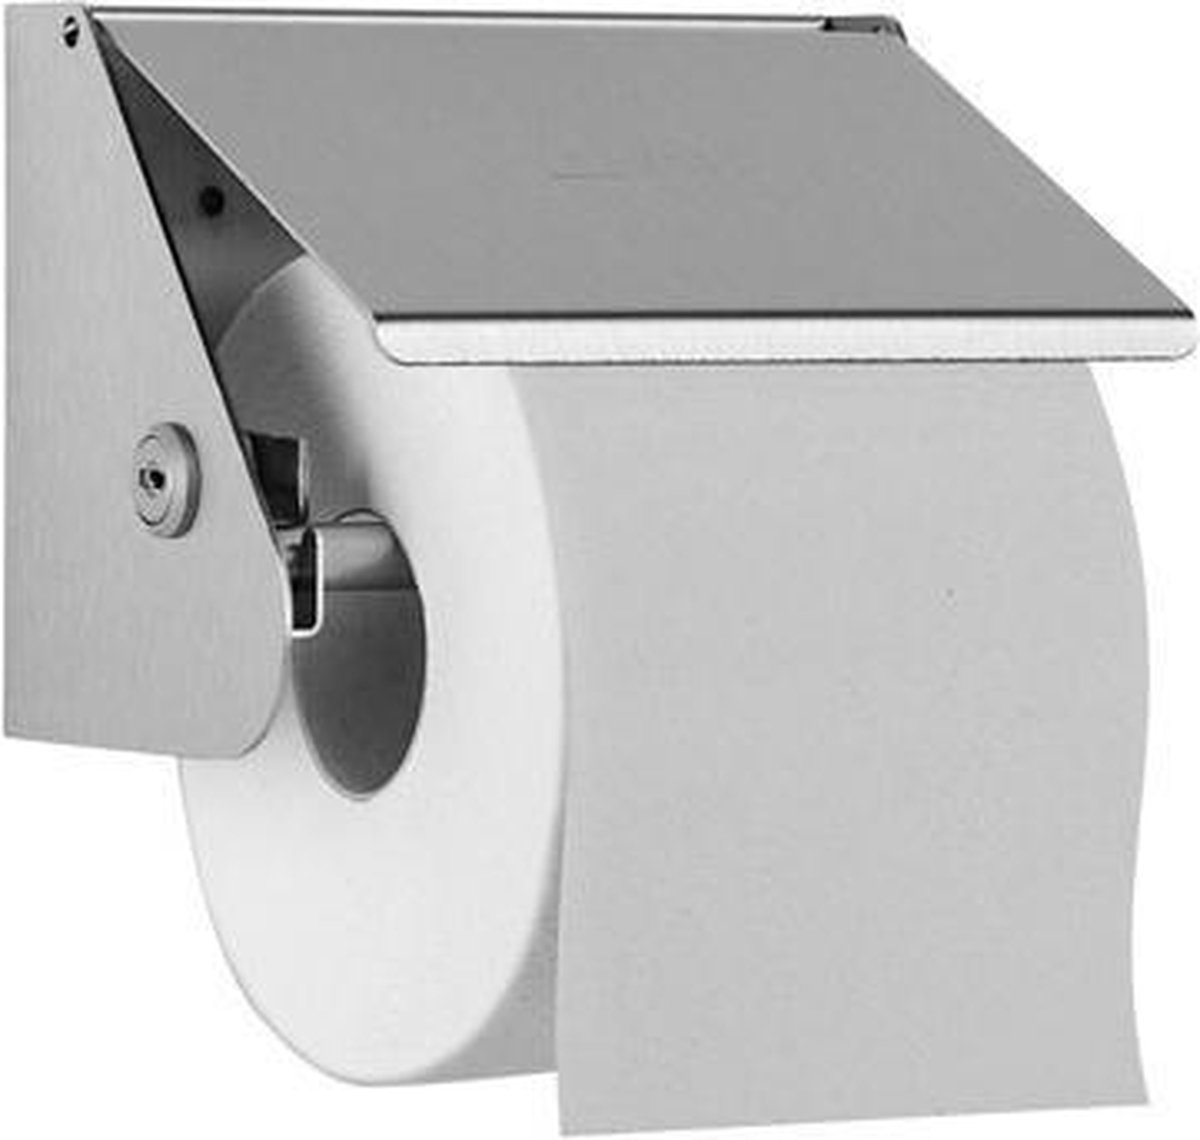 RVS toiletrolhouder WP148 voor opbouw van Wagner-EWAR